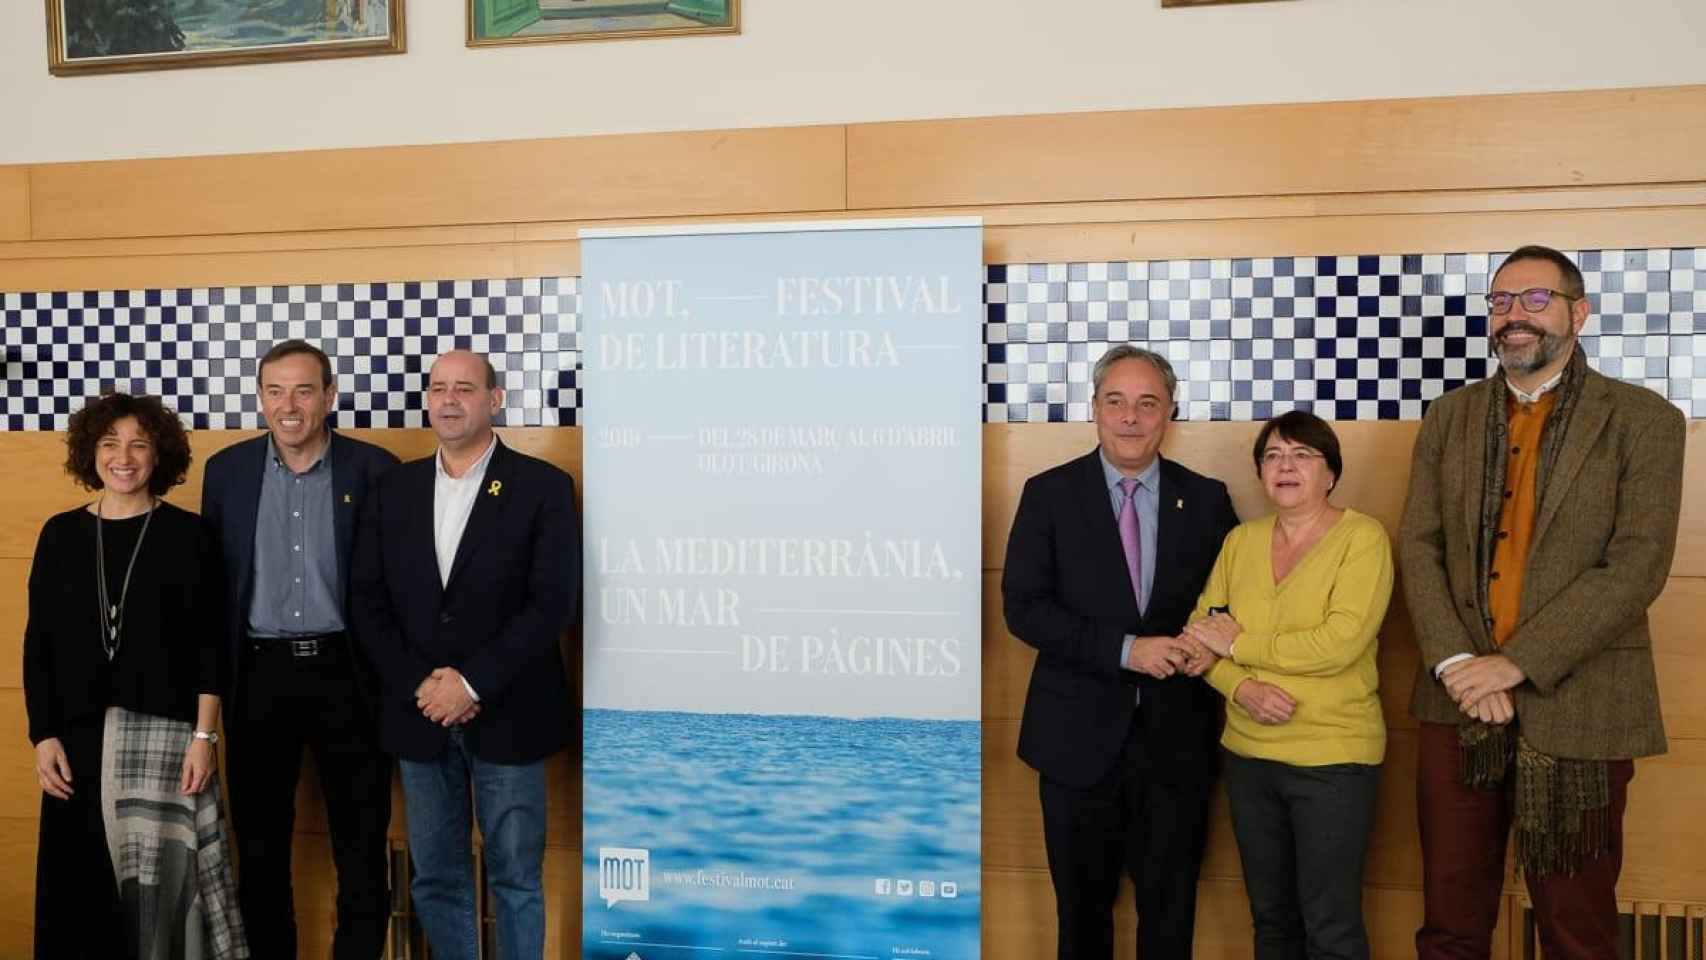 Presentación del Festival de Literatura MOT 2019 / MARTÍ ALBESA